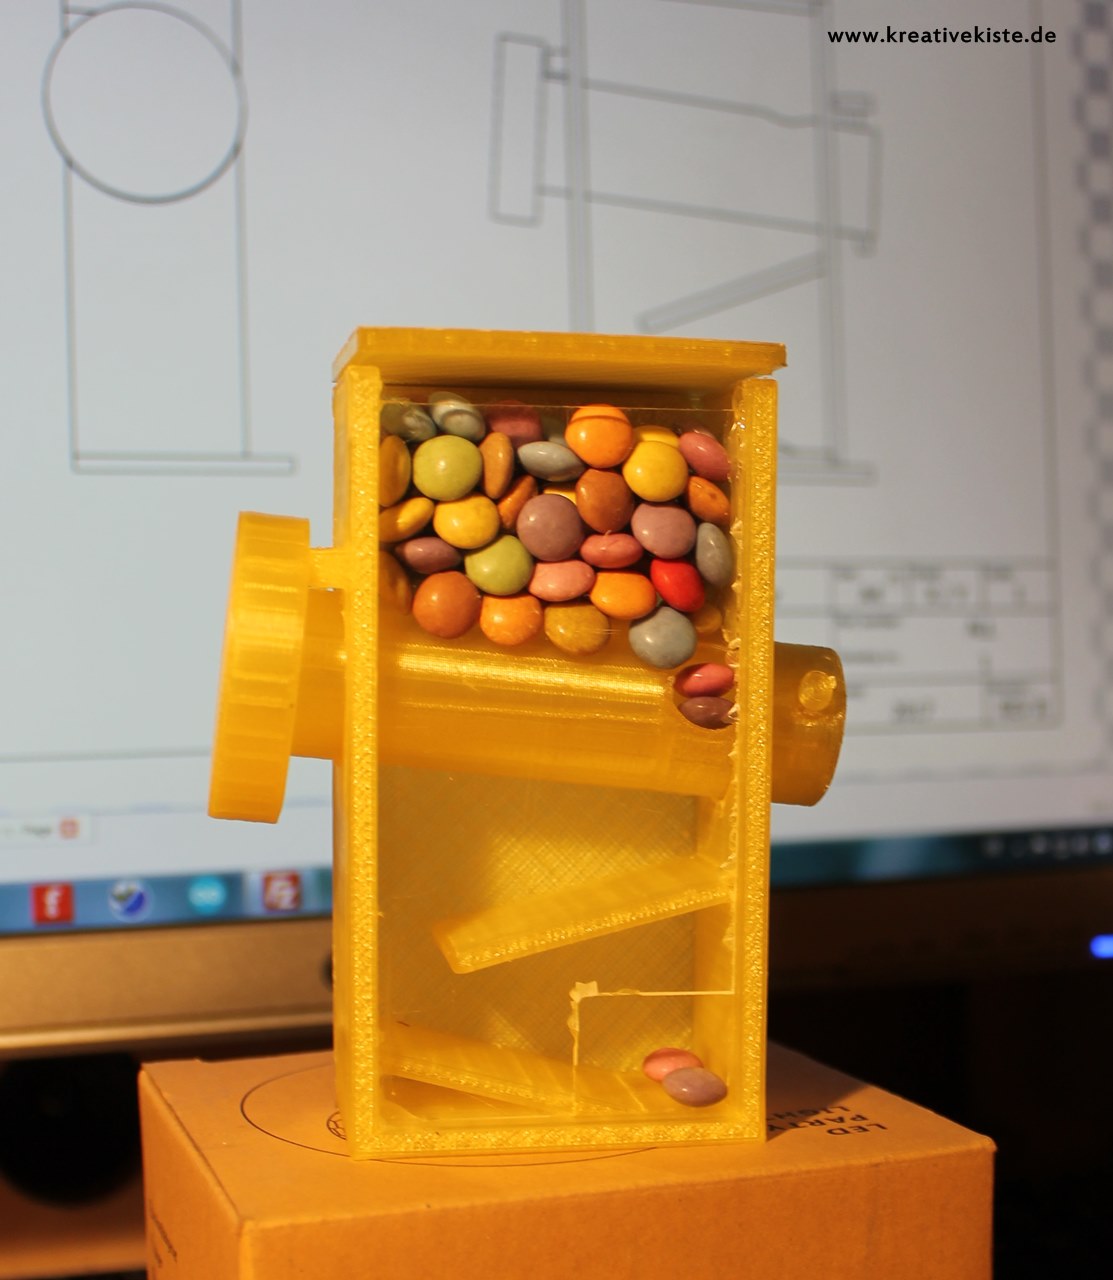 3D print candy dispenser 2.0